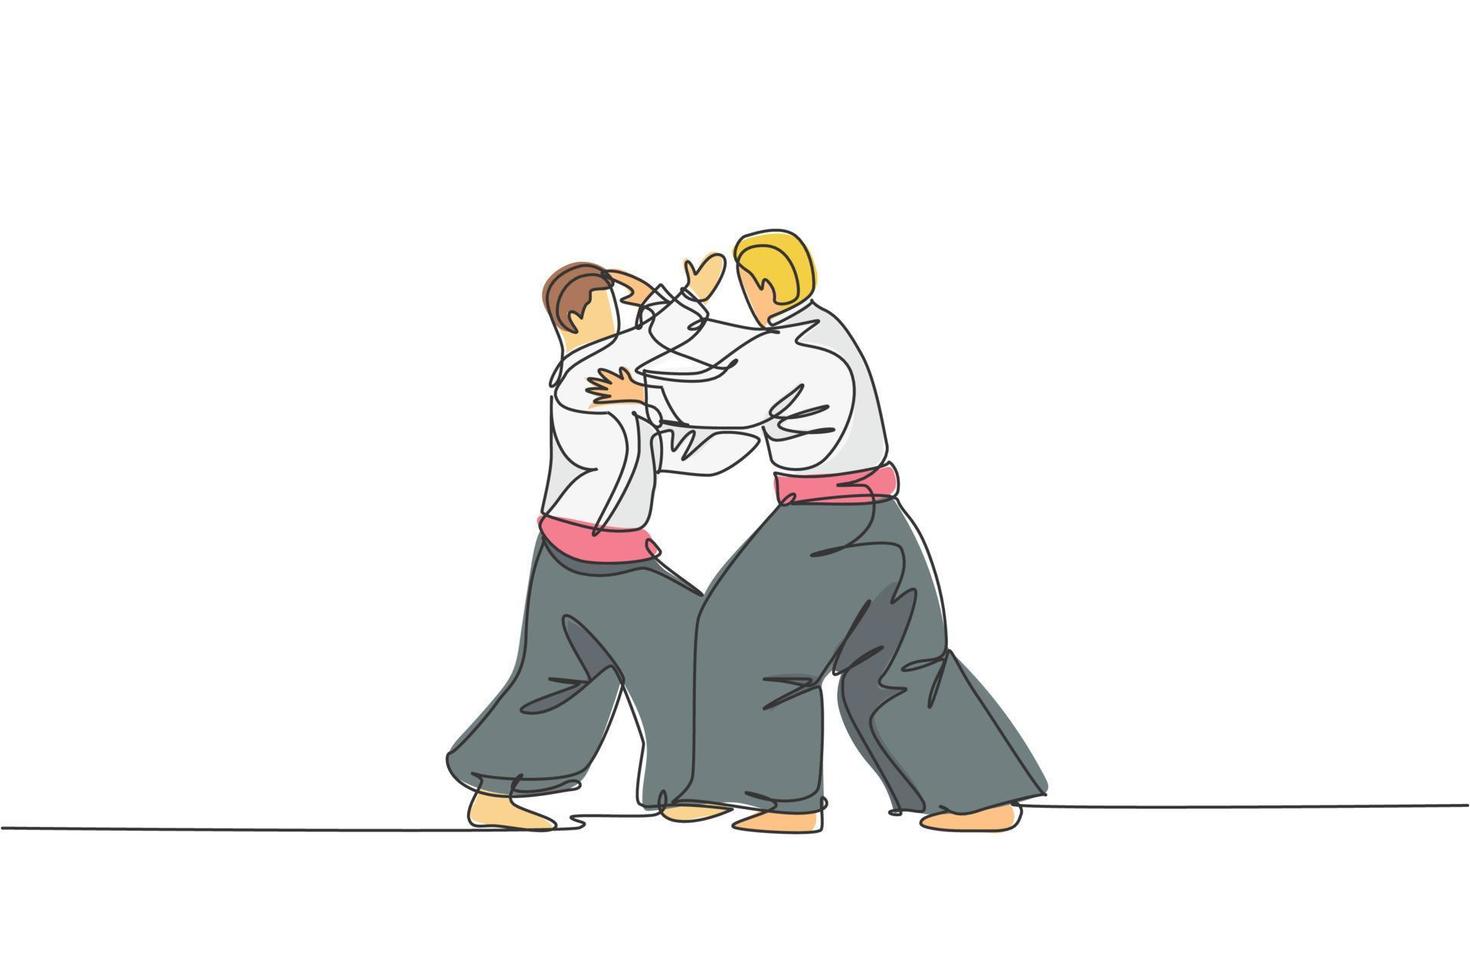 único desenho de linha contínua de dois jovens esportivos vestindo quimono, praticando a técnica de aikido com luta de sparring. conceito de arte marcial japonesa. ilustração em vetor desenho desenho de uma linha na moda